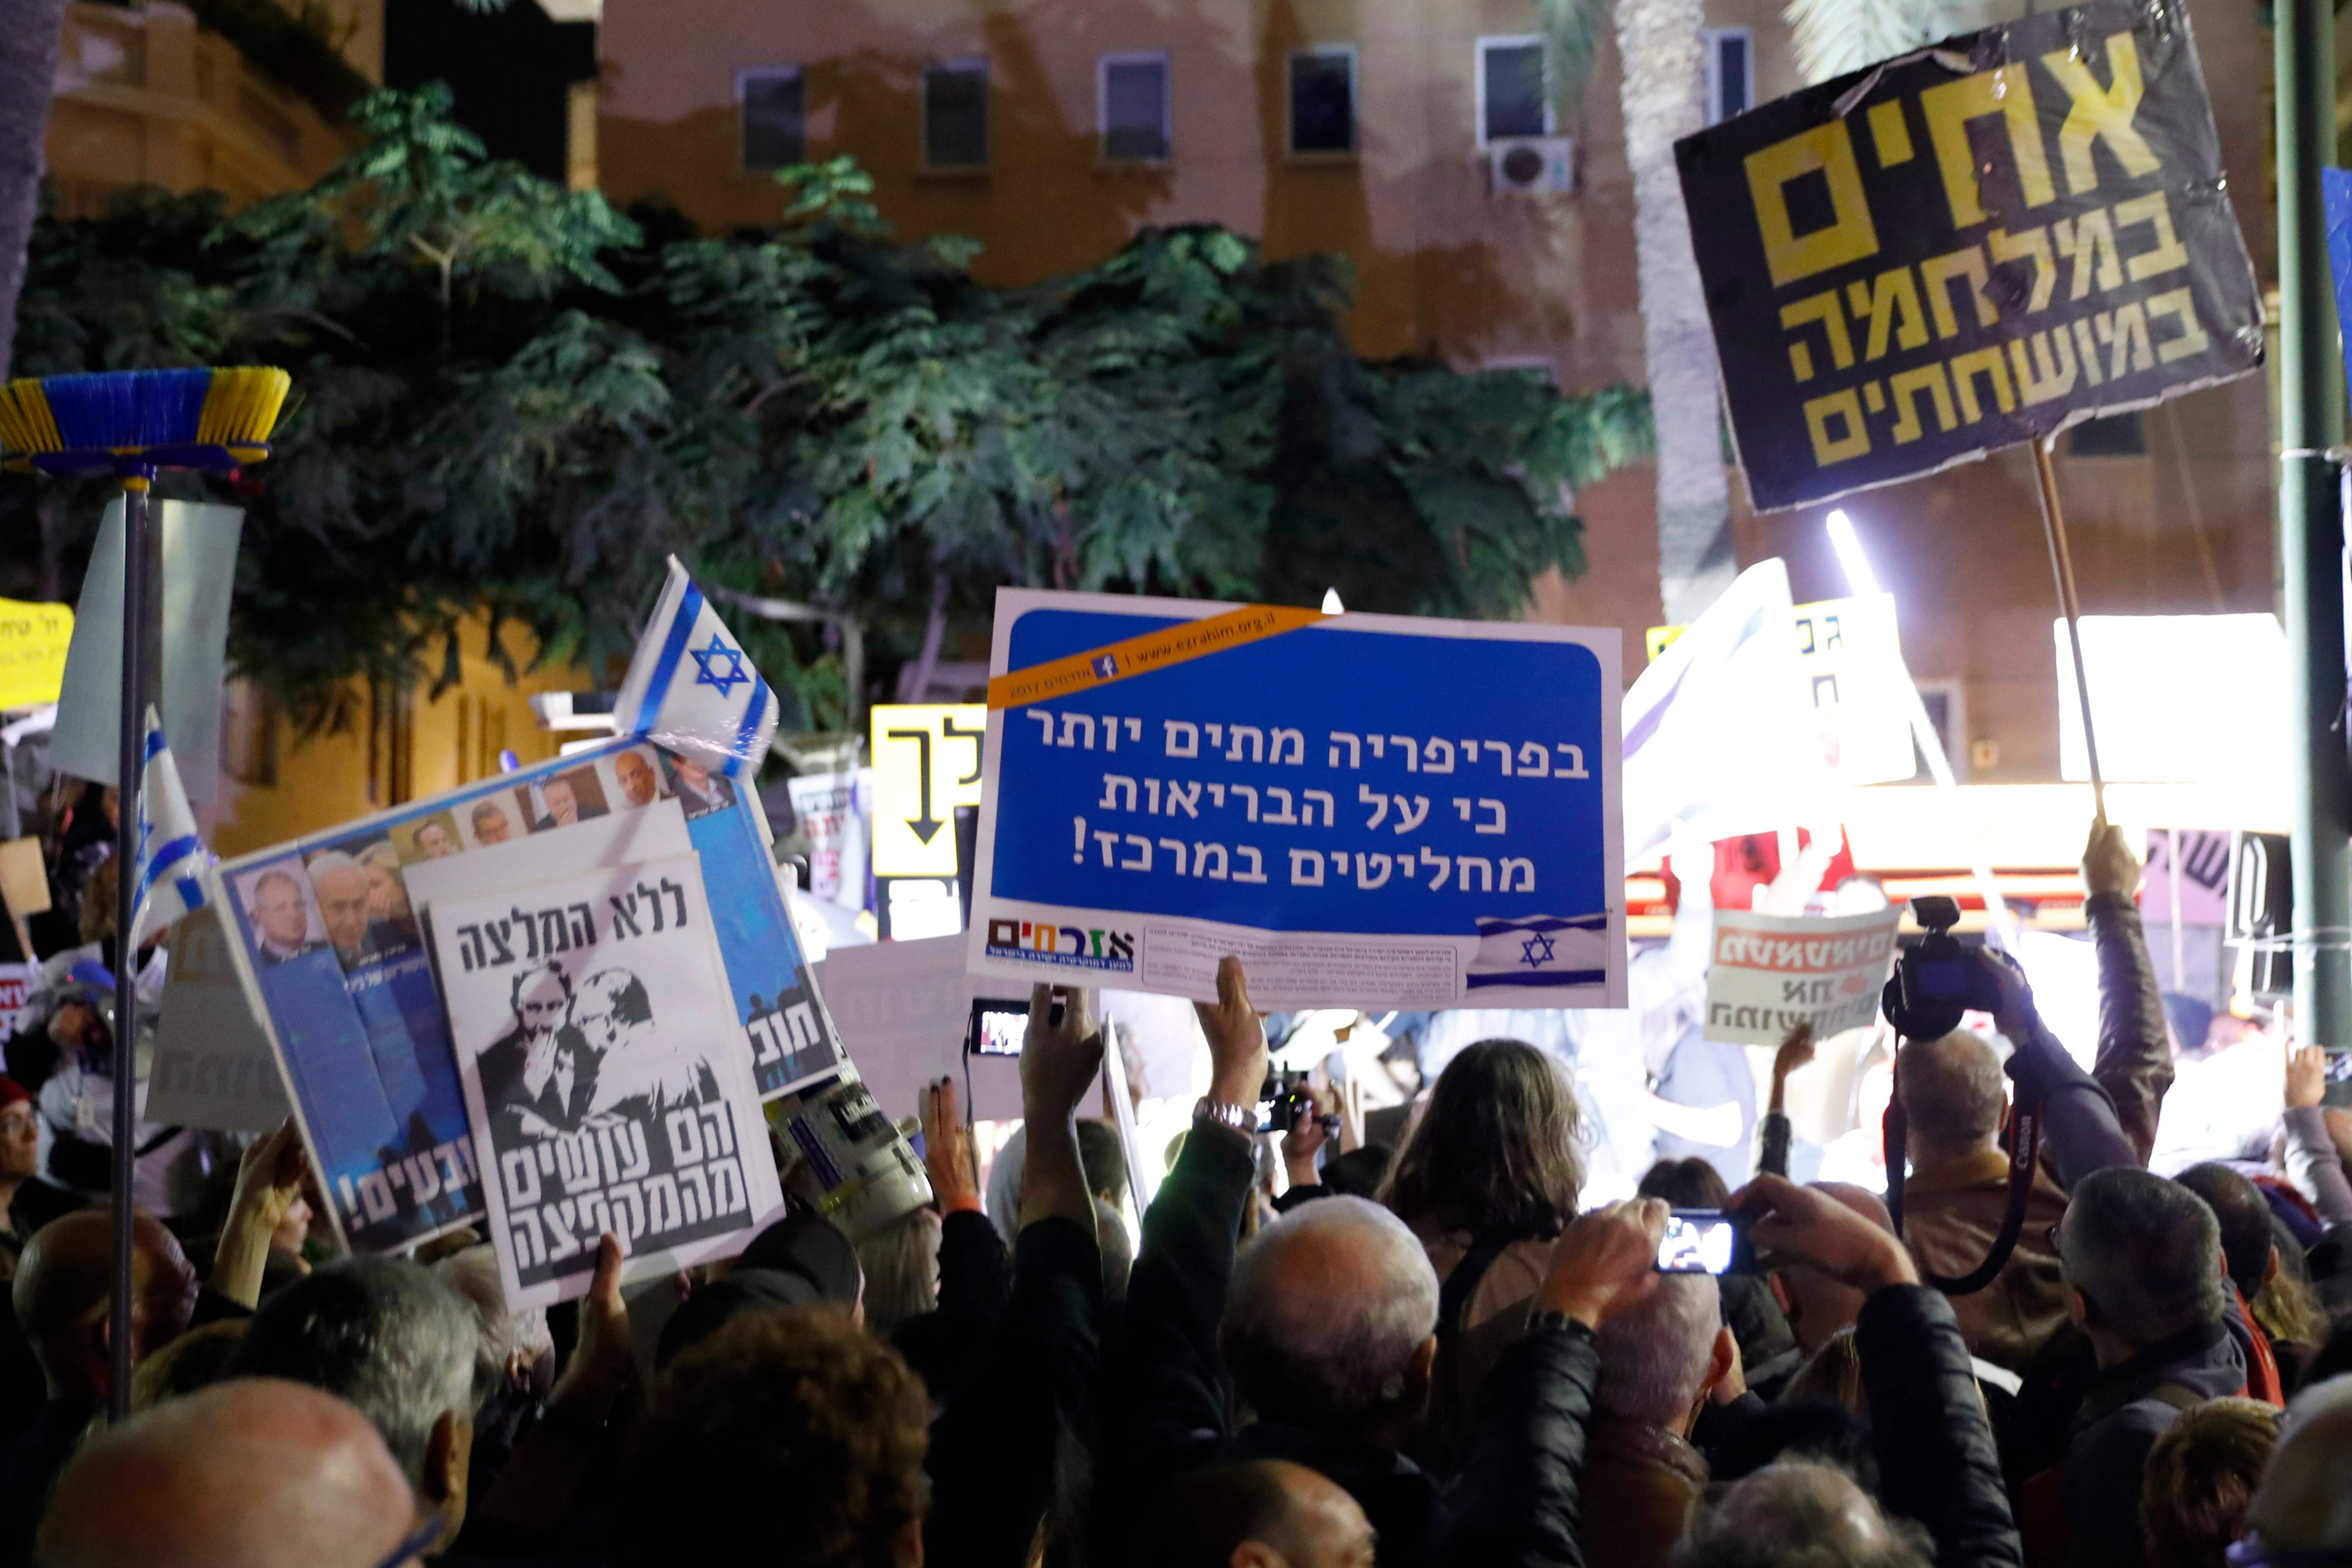 الاحتجاجات فى تل أبيب بسبب الفساد الحكومى